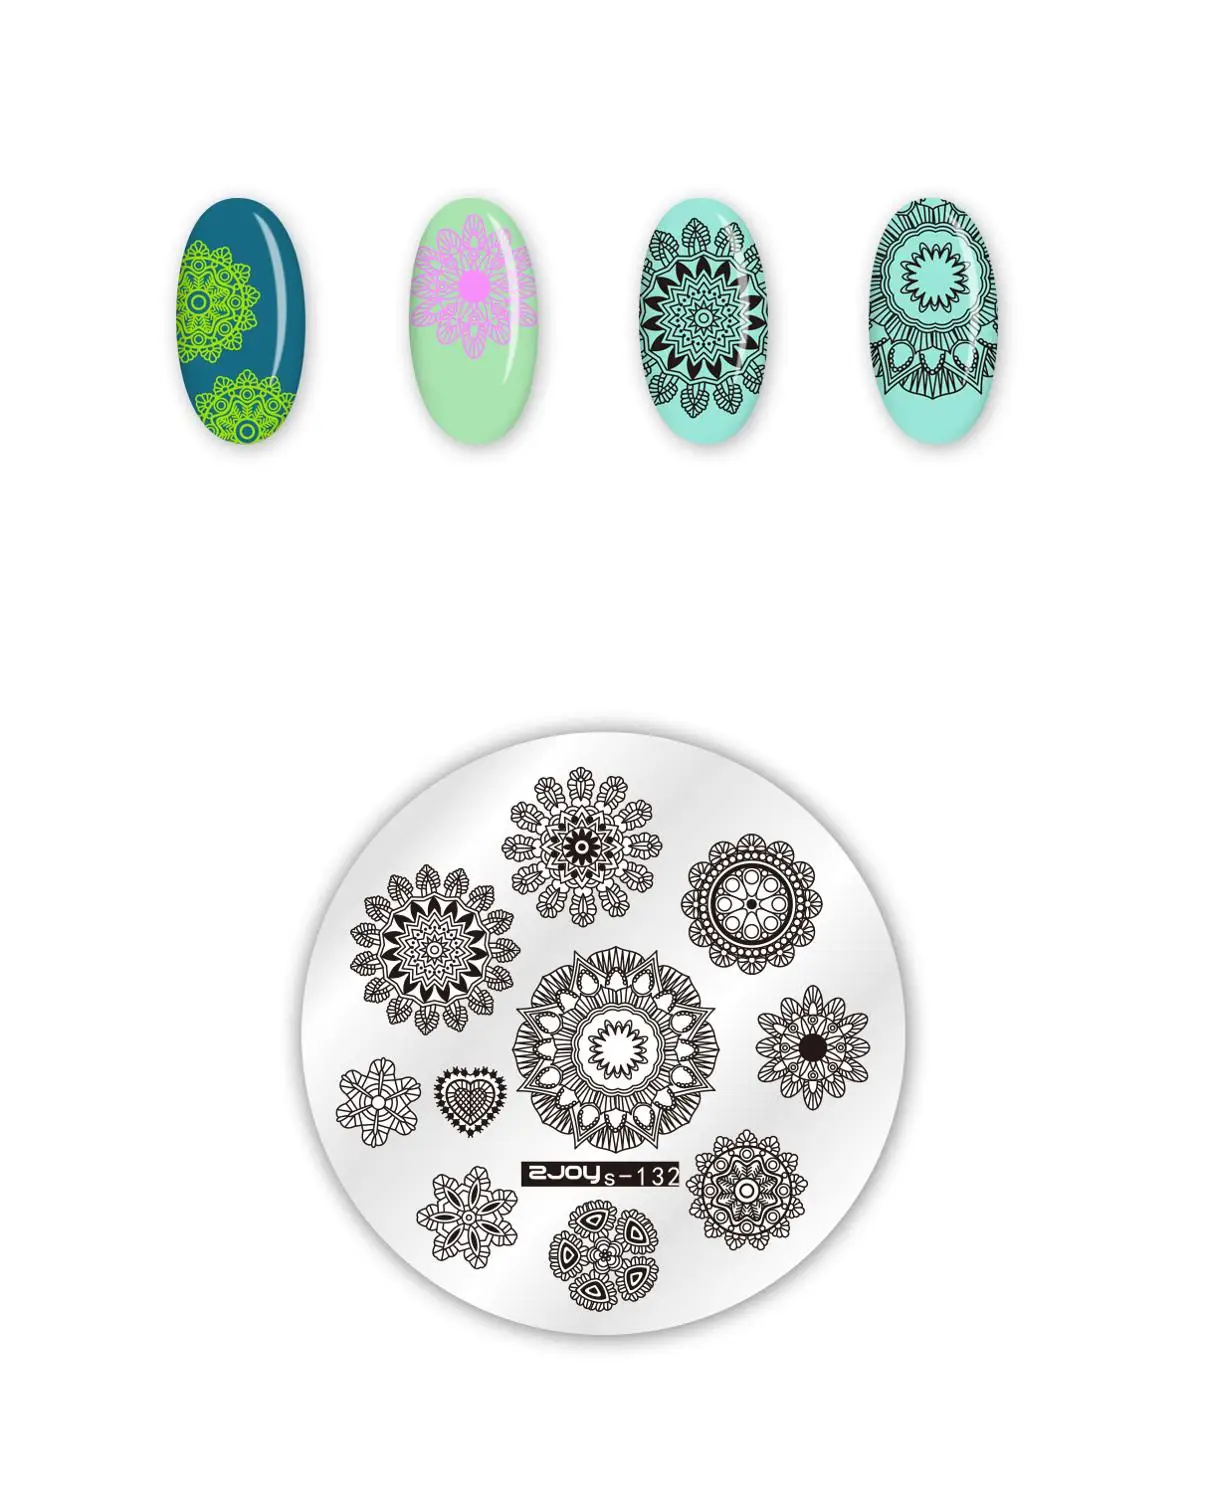 Стемпинг год Круглые штамповки для ногтей пластины цветок Геометрическая обезьяна дизайн ногтей трафареты для дизайна ногтей штамп шаблон - Цвет: zjoys132